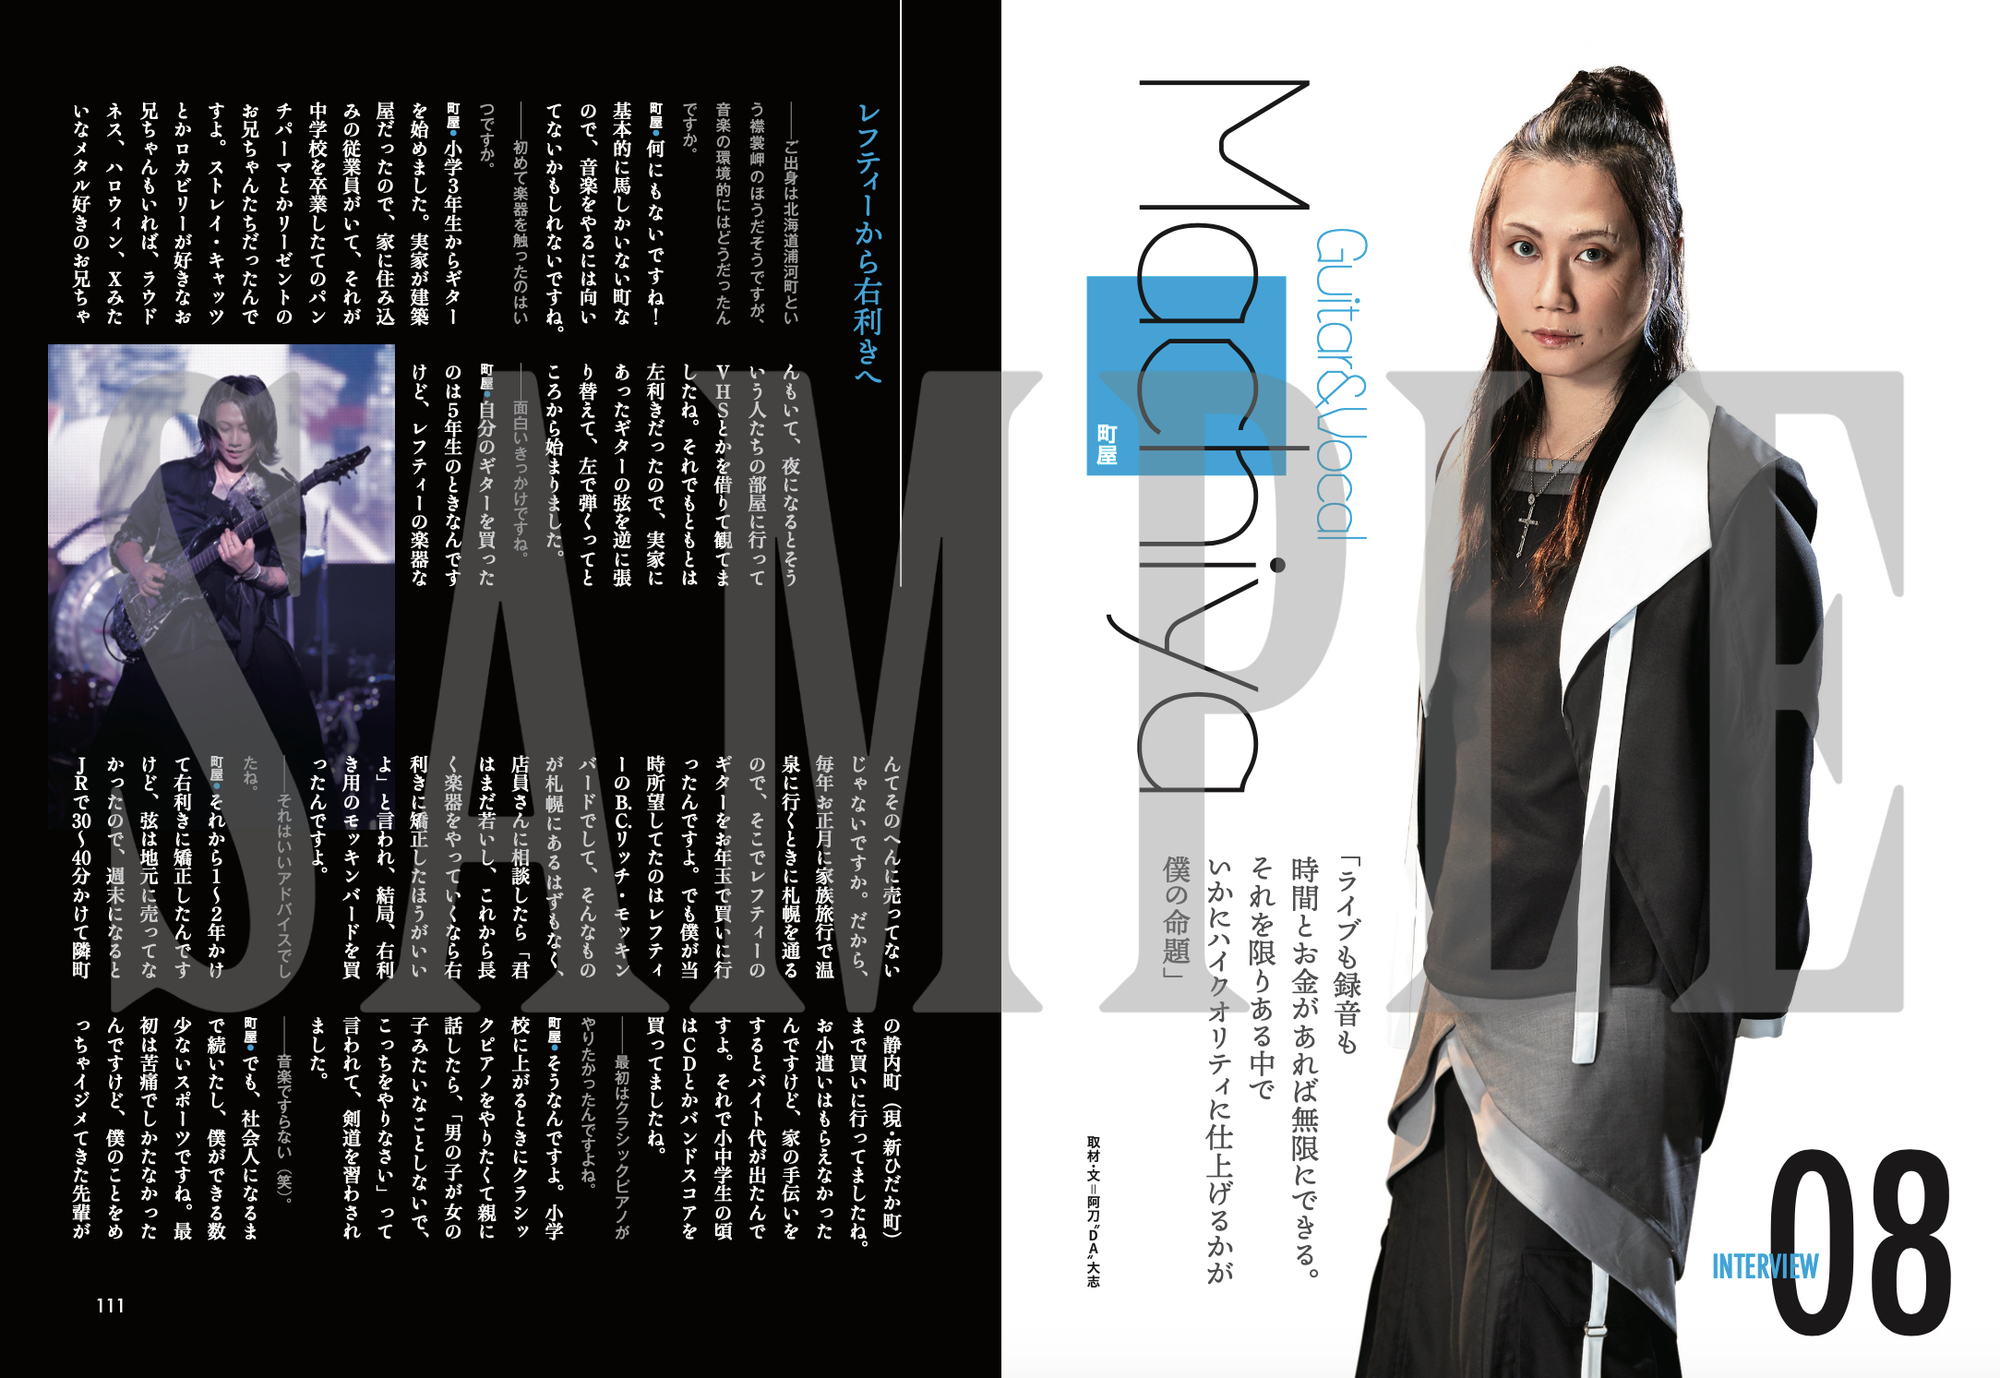 10 14 水 発売 New Album Tokyo Singing 真 八重流盤 と 初回限定ブック盤 の内容を一部初公開 和楽器バンド Official Website